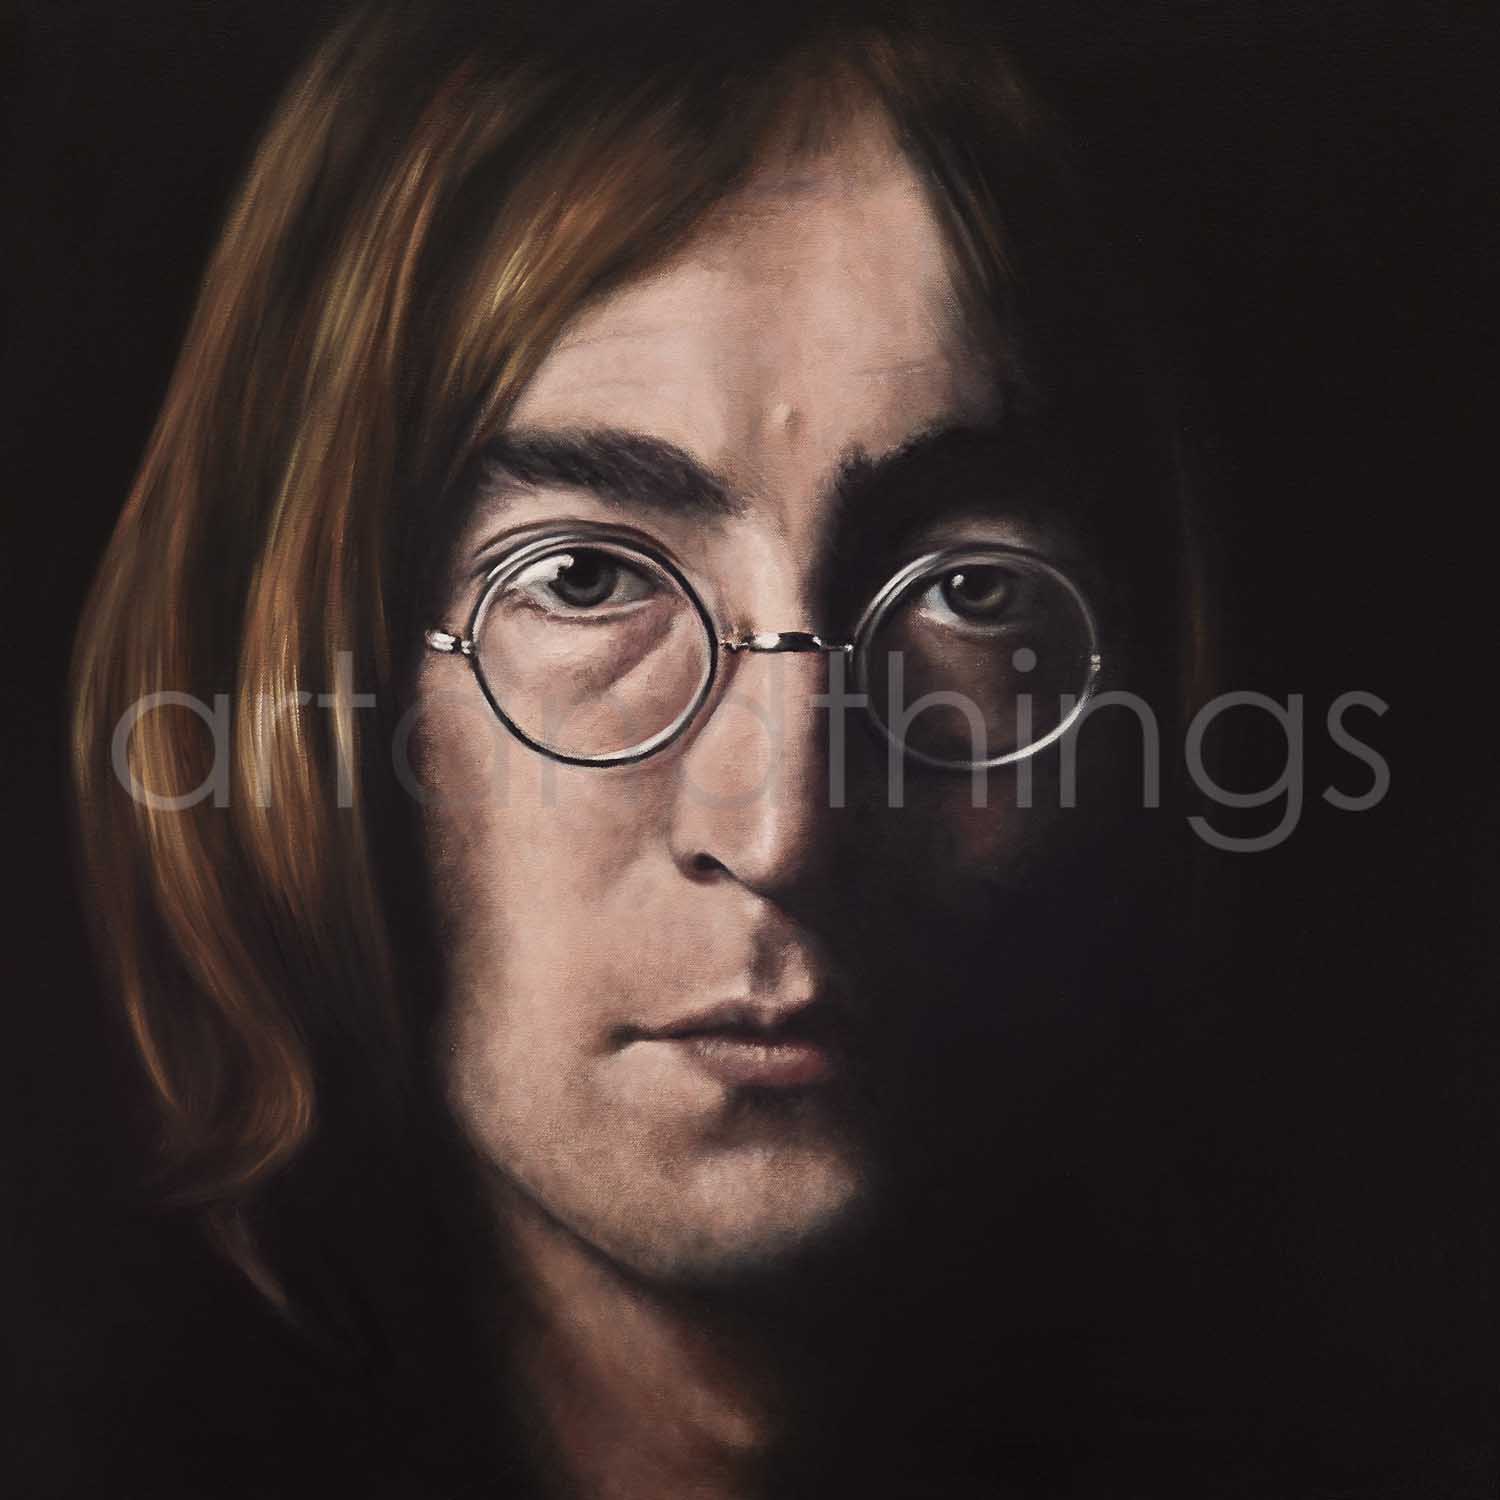 John Lennon Print - The Beatles Framed and Signed